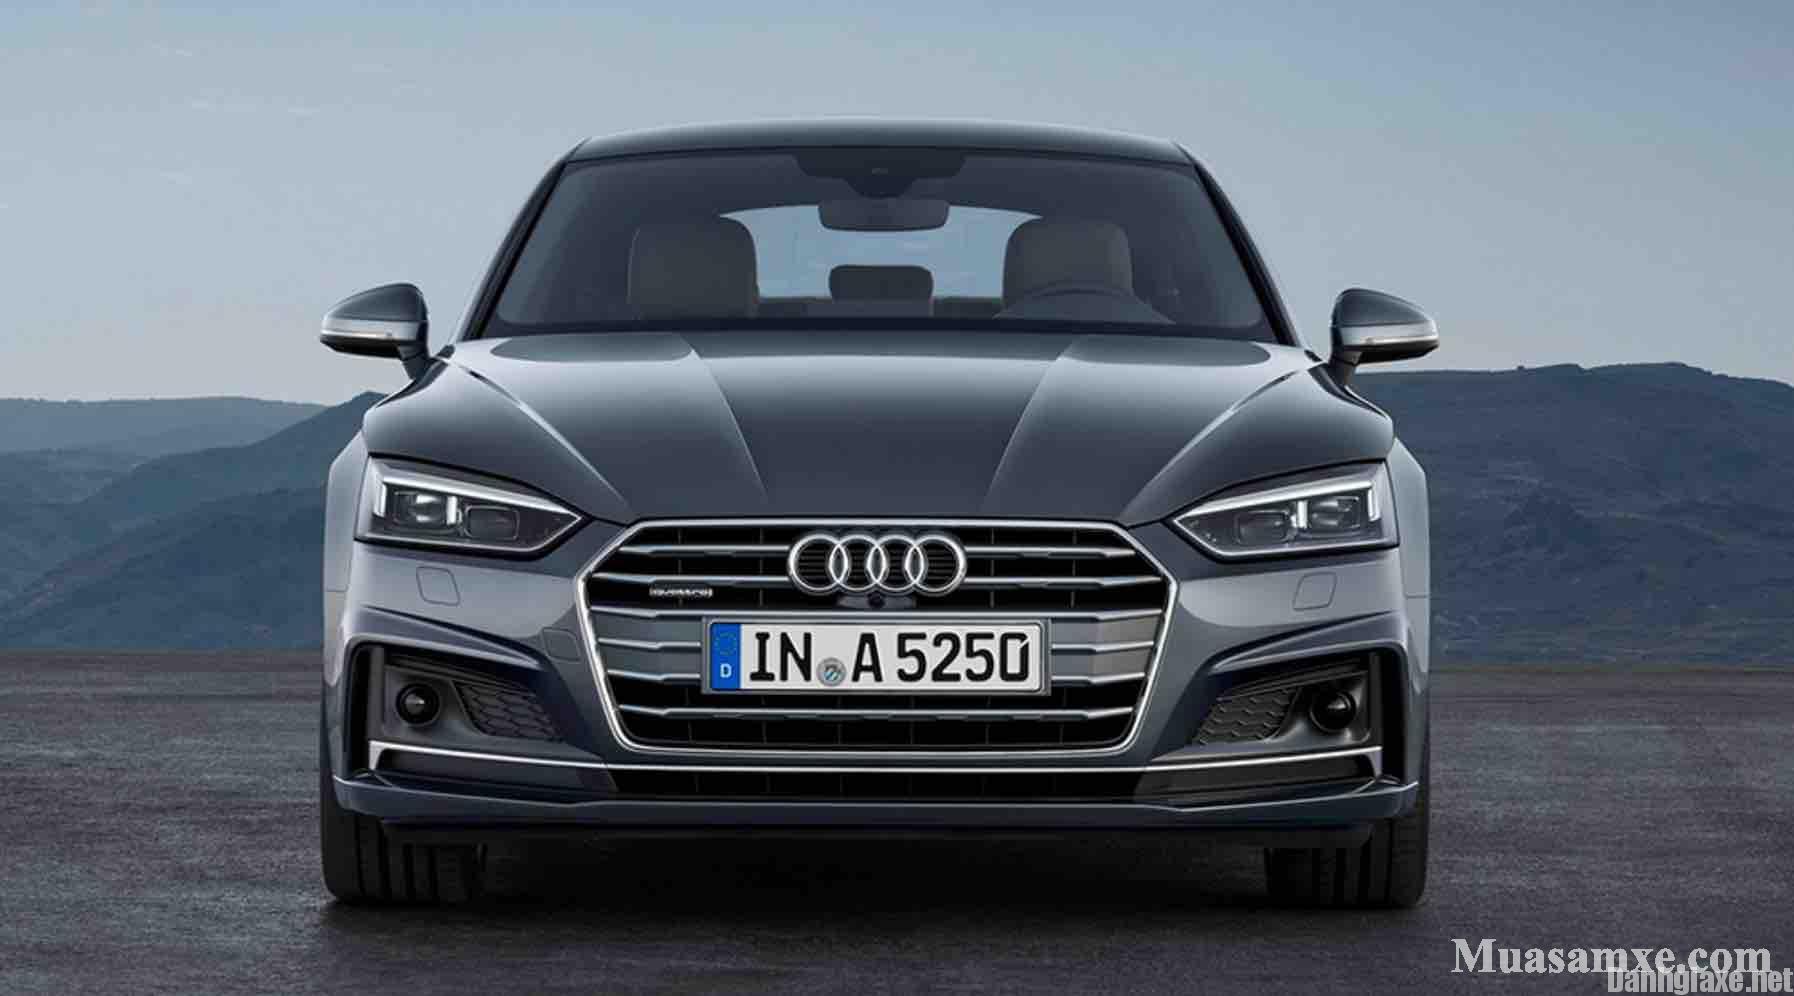 Đánh giá xe Audi A5 Sportback 2017 về thiết kế vận hành và giá bán